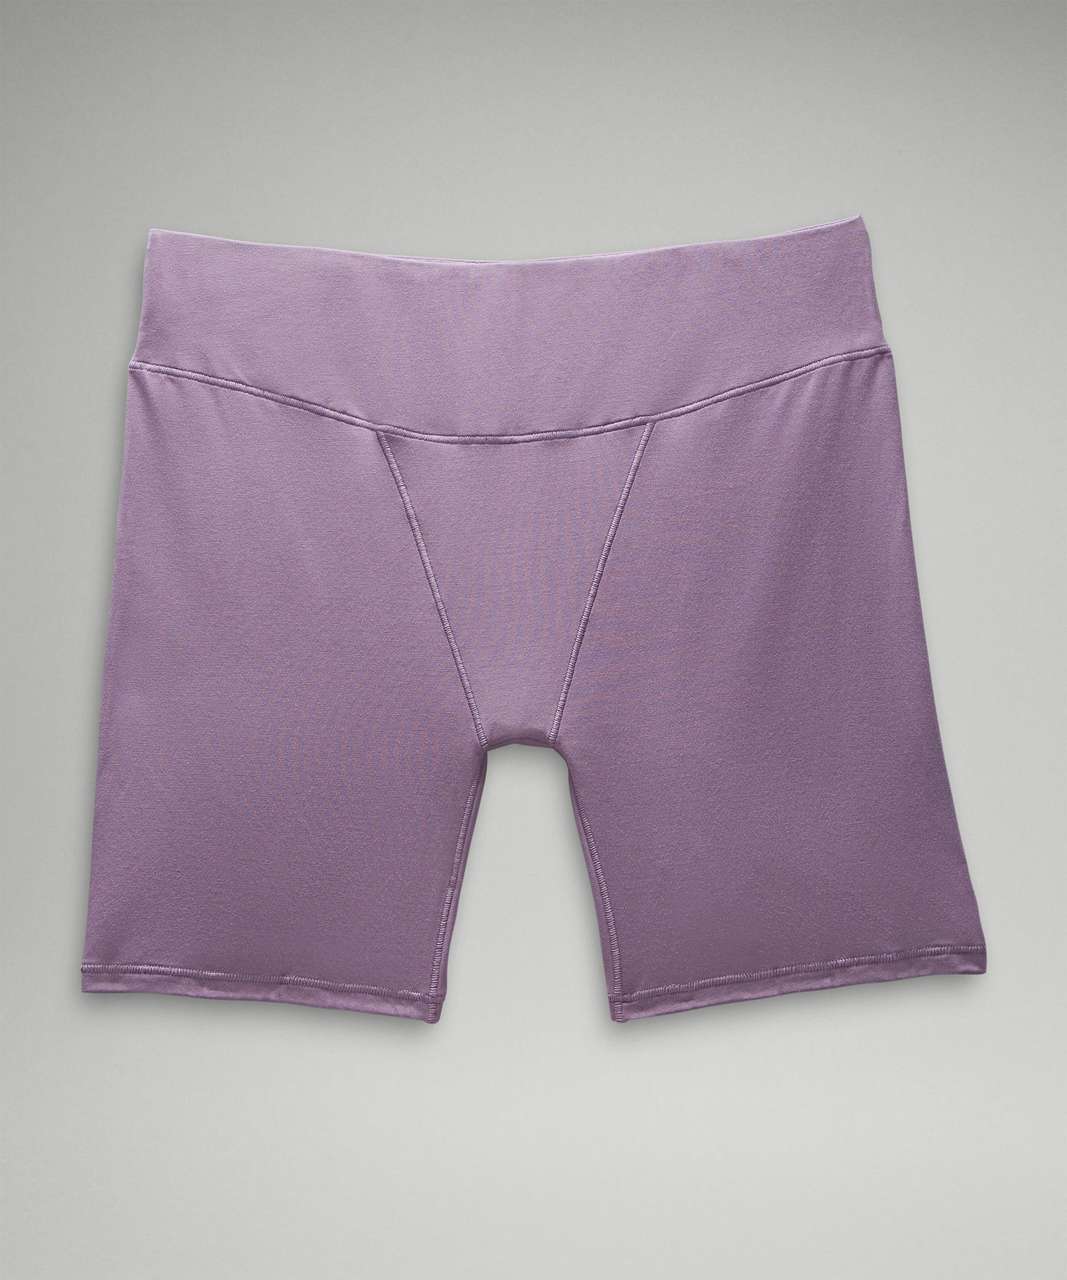 Lululemon UnderEase Super-High-Rise Shortie Underwear 5 - Pale